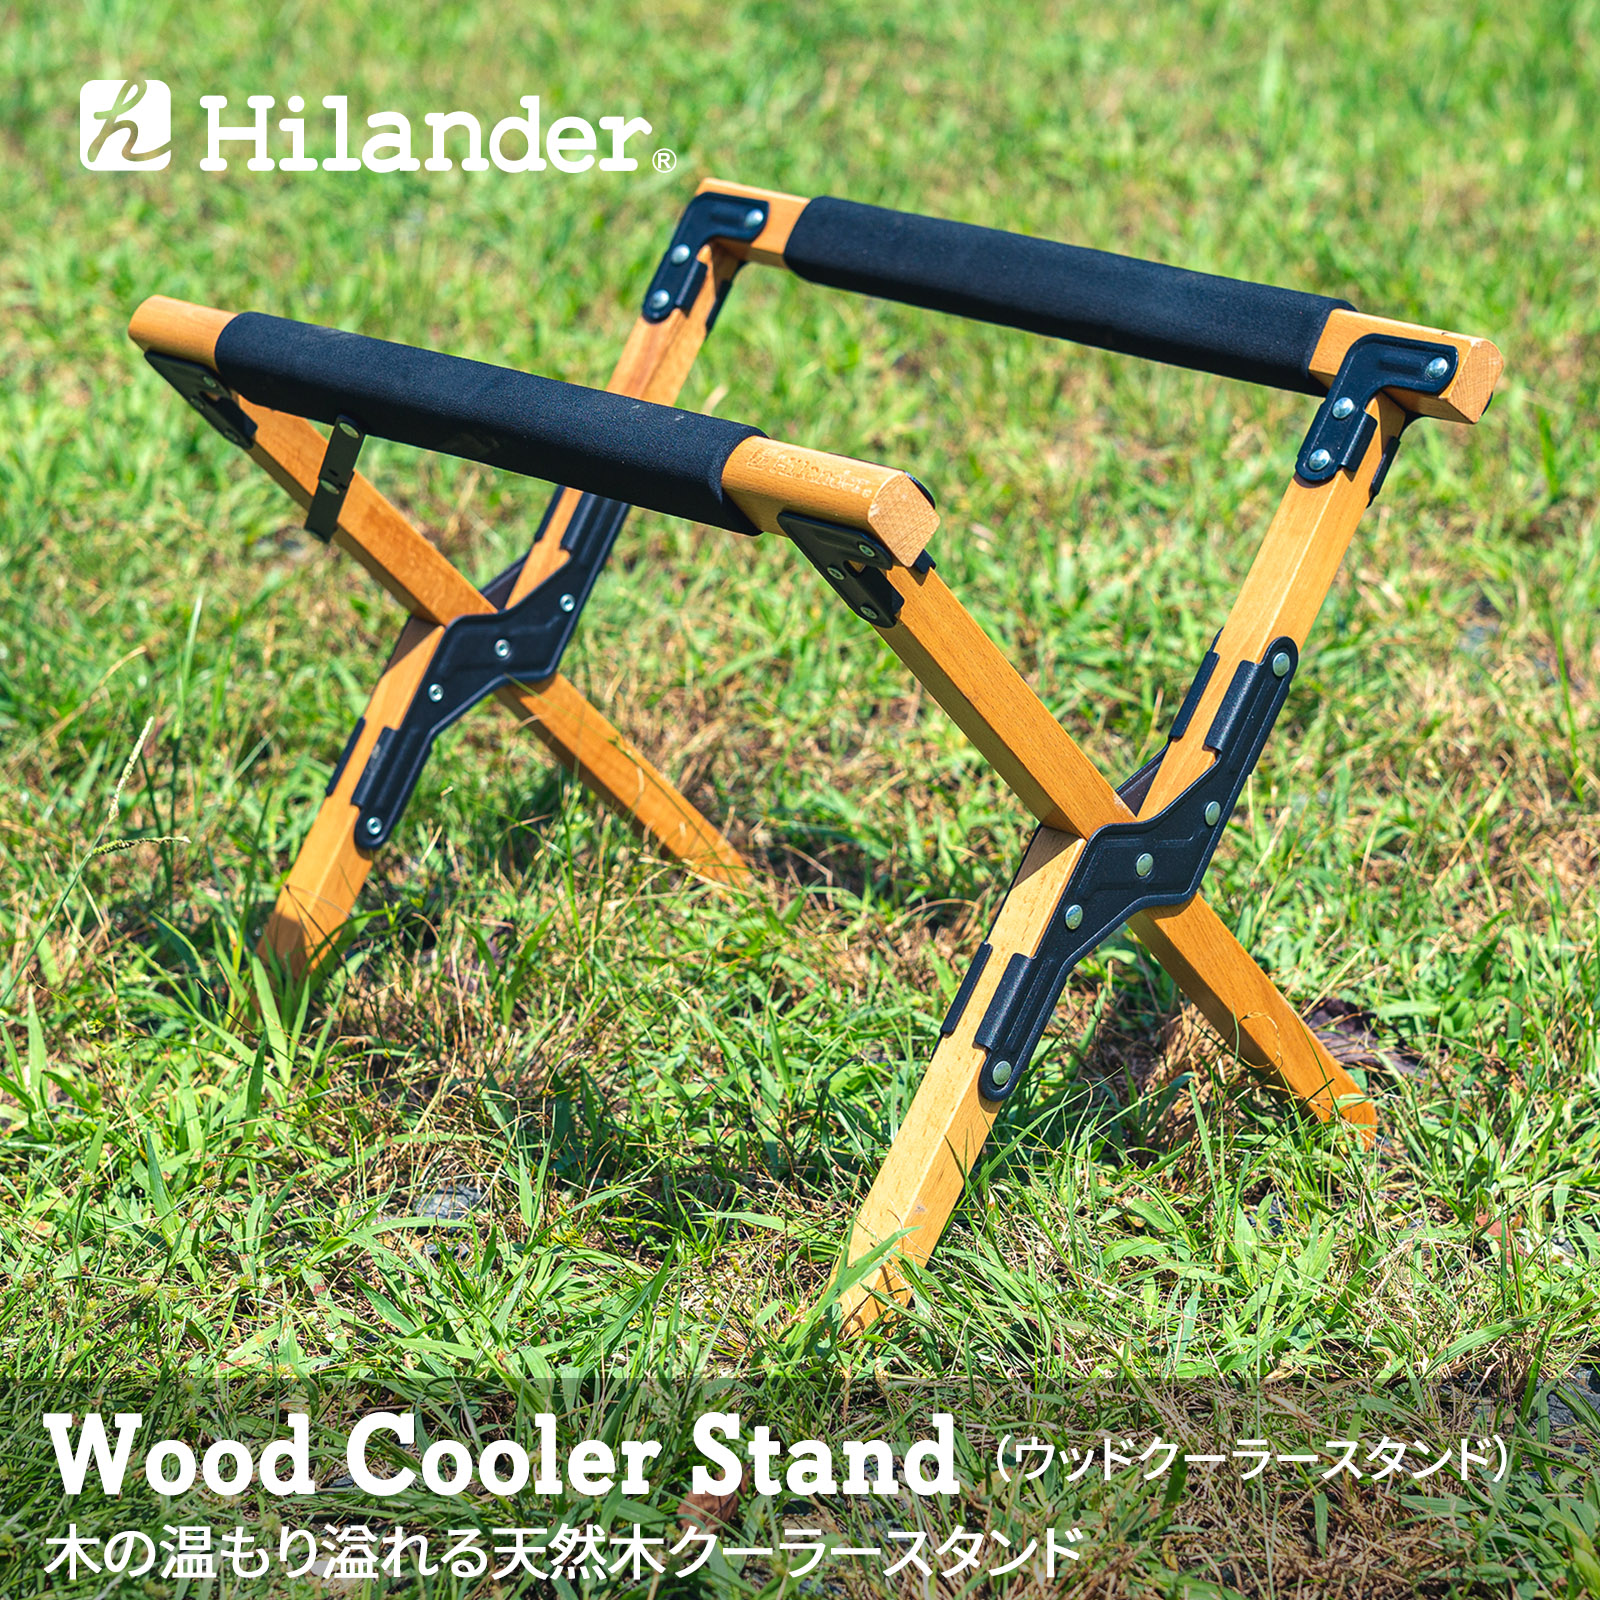 ファッション通販 トレンド 保冷剤 クーラーボックスアクセサリー Hilander ハイランダー HCA0179 ウッドクーラースタンド